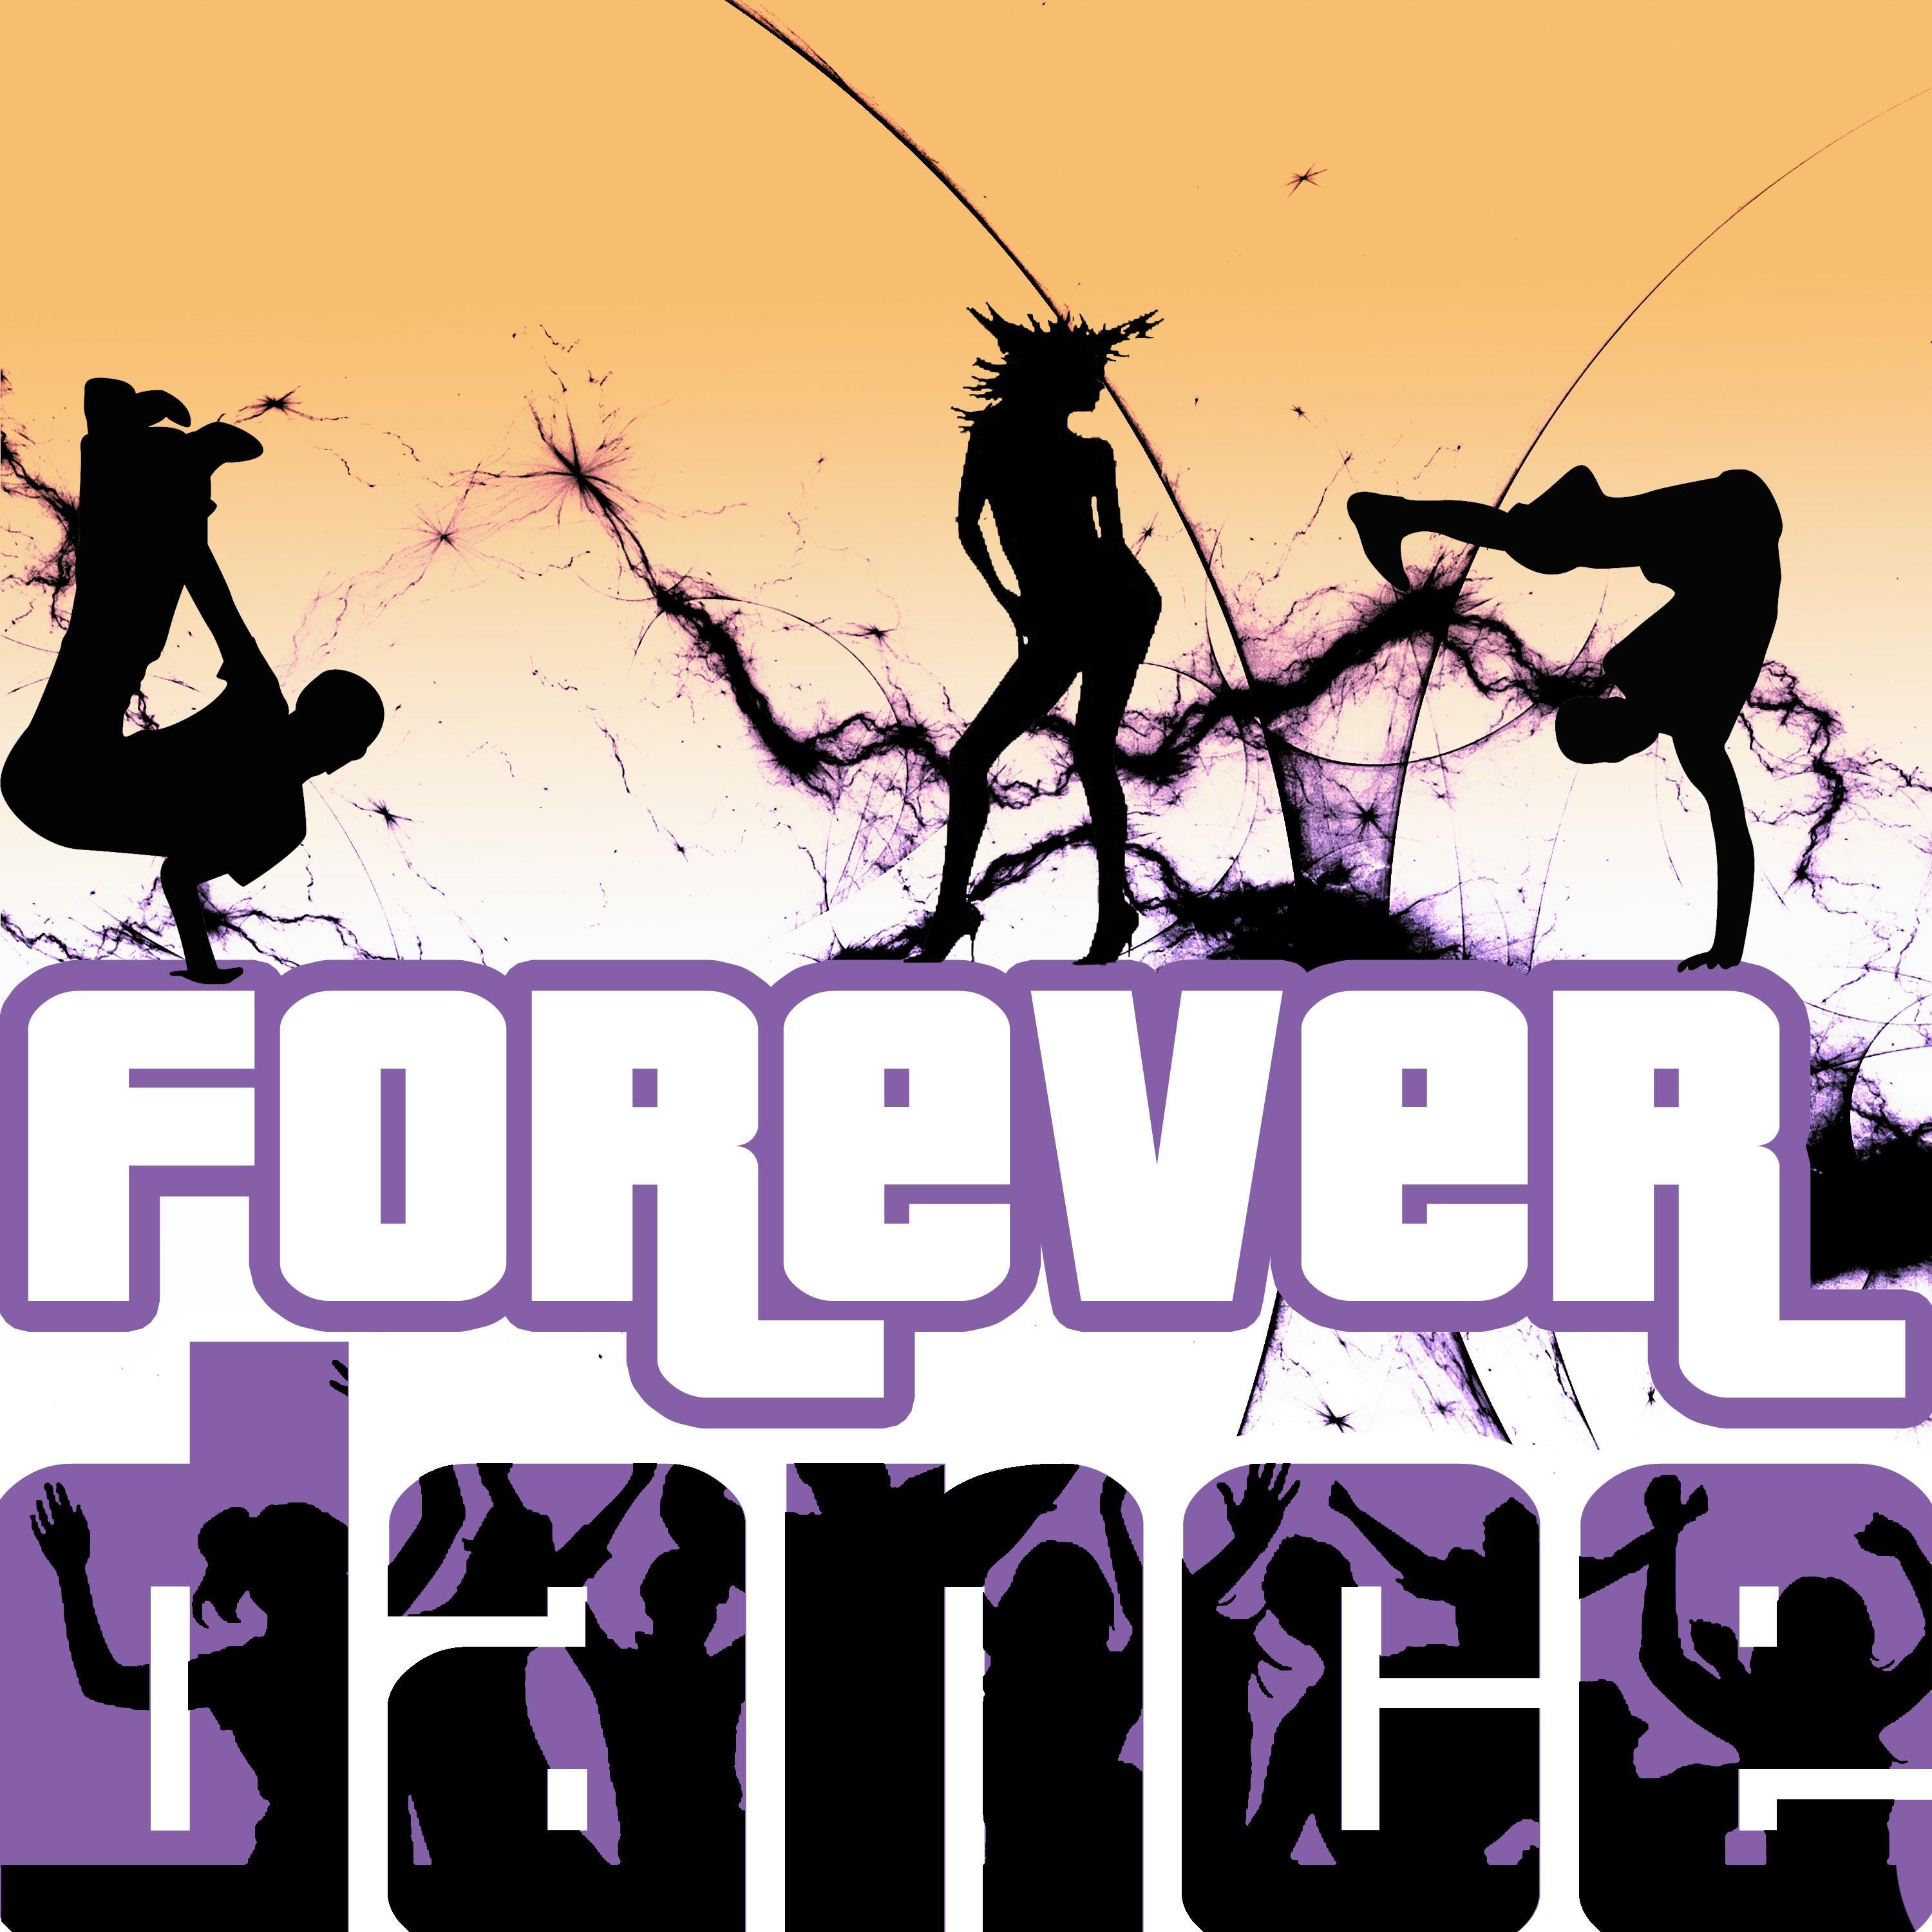 Forever Dance